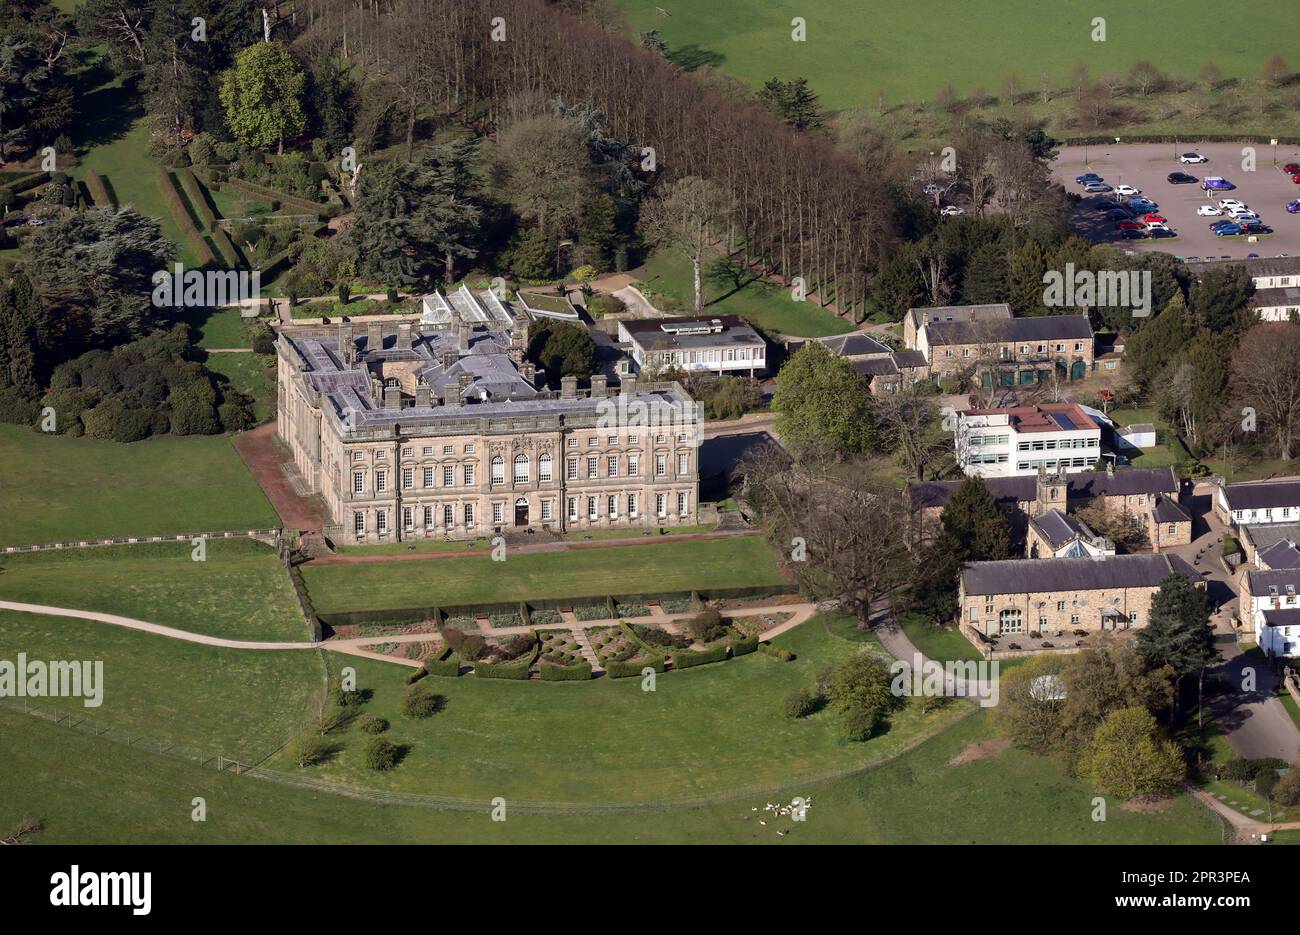 Vista aerea del Castello e dei Giardini di Wentworth, Barnsley, South Yorkshire. La casa principale è utilizzata dal Northern College. Le sale per studenti sono sulla destra. Foto Stock